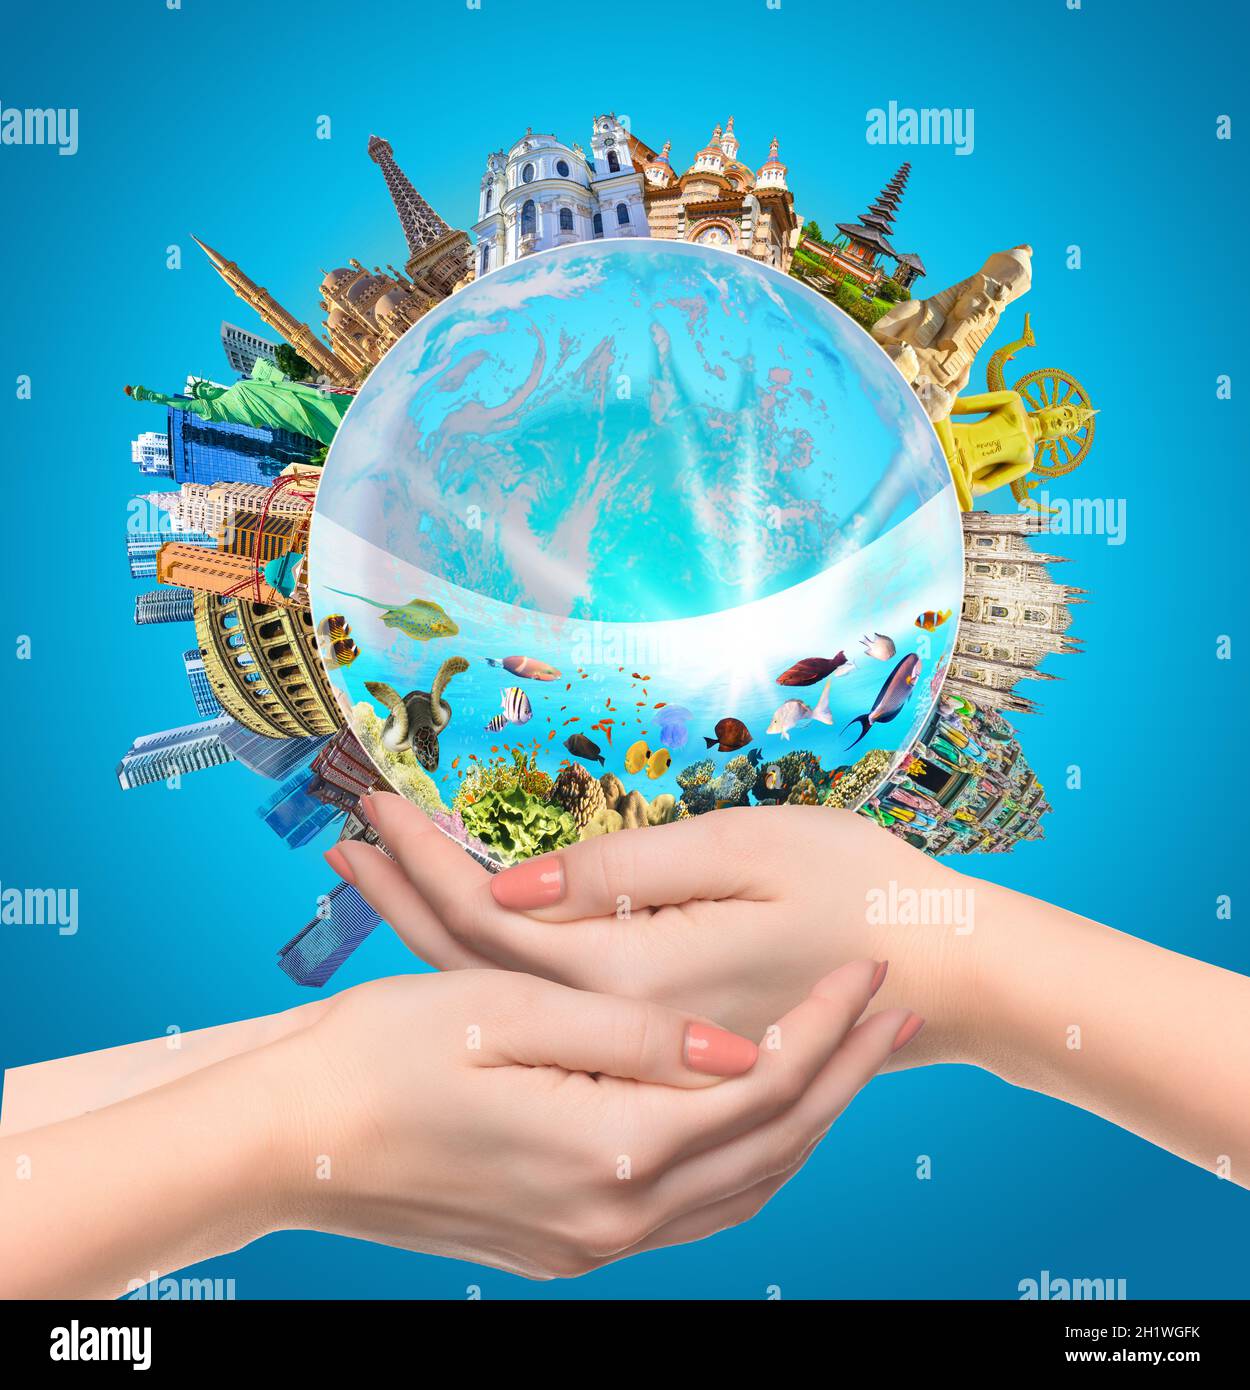 Frau hält Globus an den Händen, Weltreligionen und Architekturdenkmäler - Collage Religionen. Konzeptuelles Bild des Weltmeers. Umweltprot Stockfoto